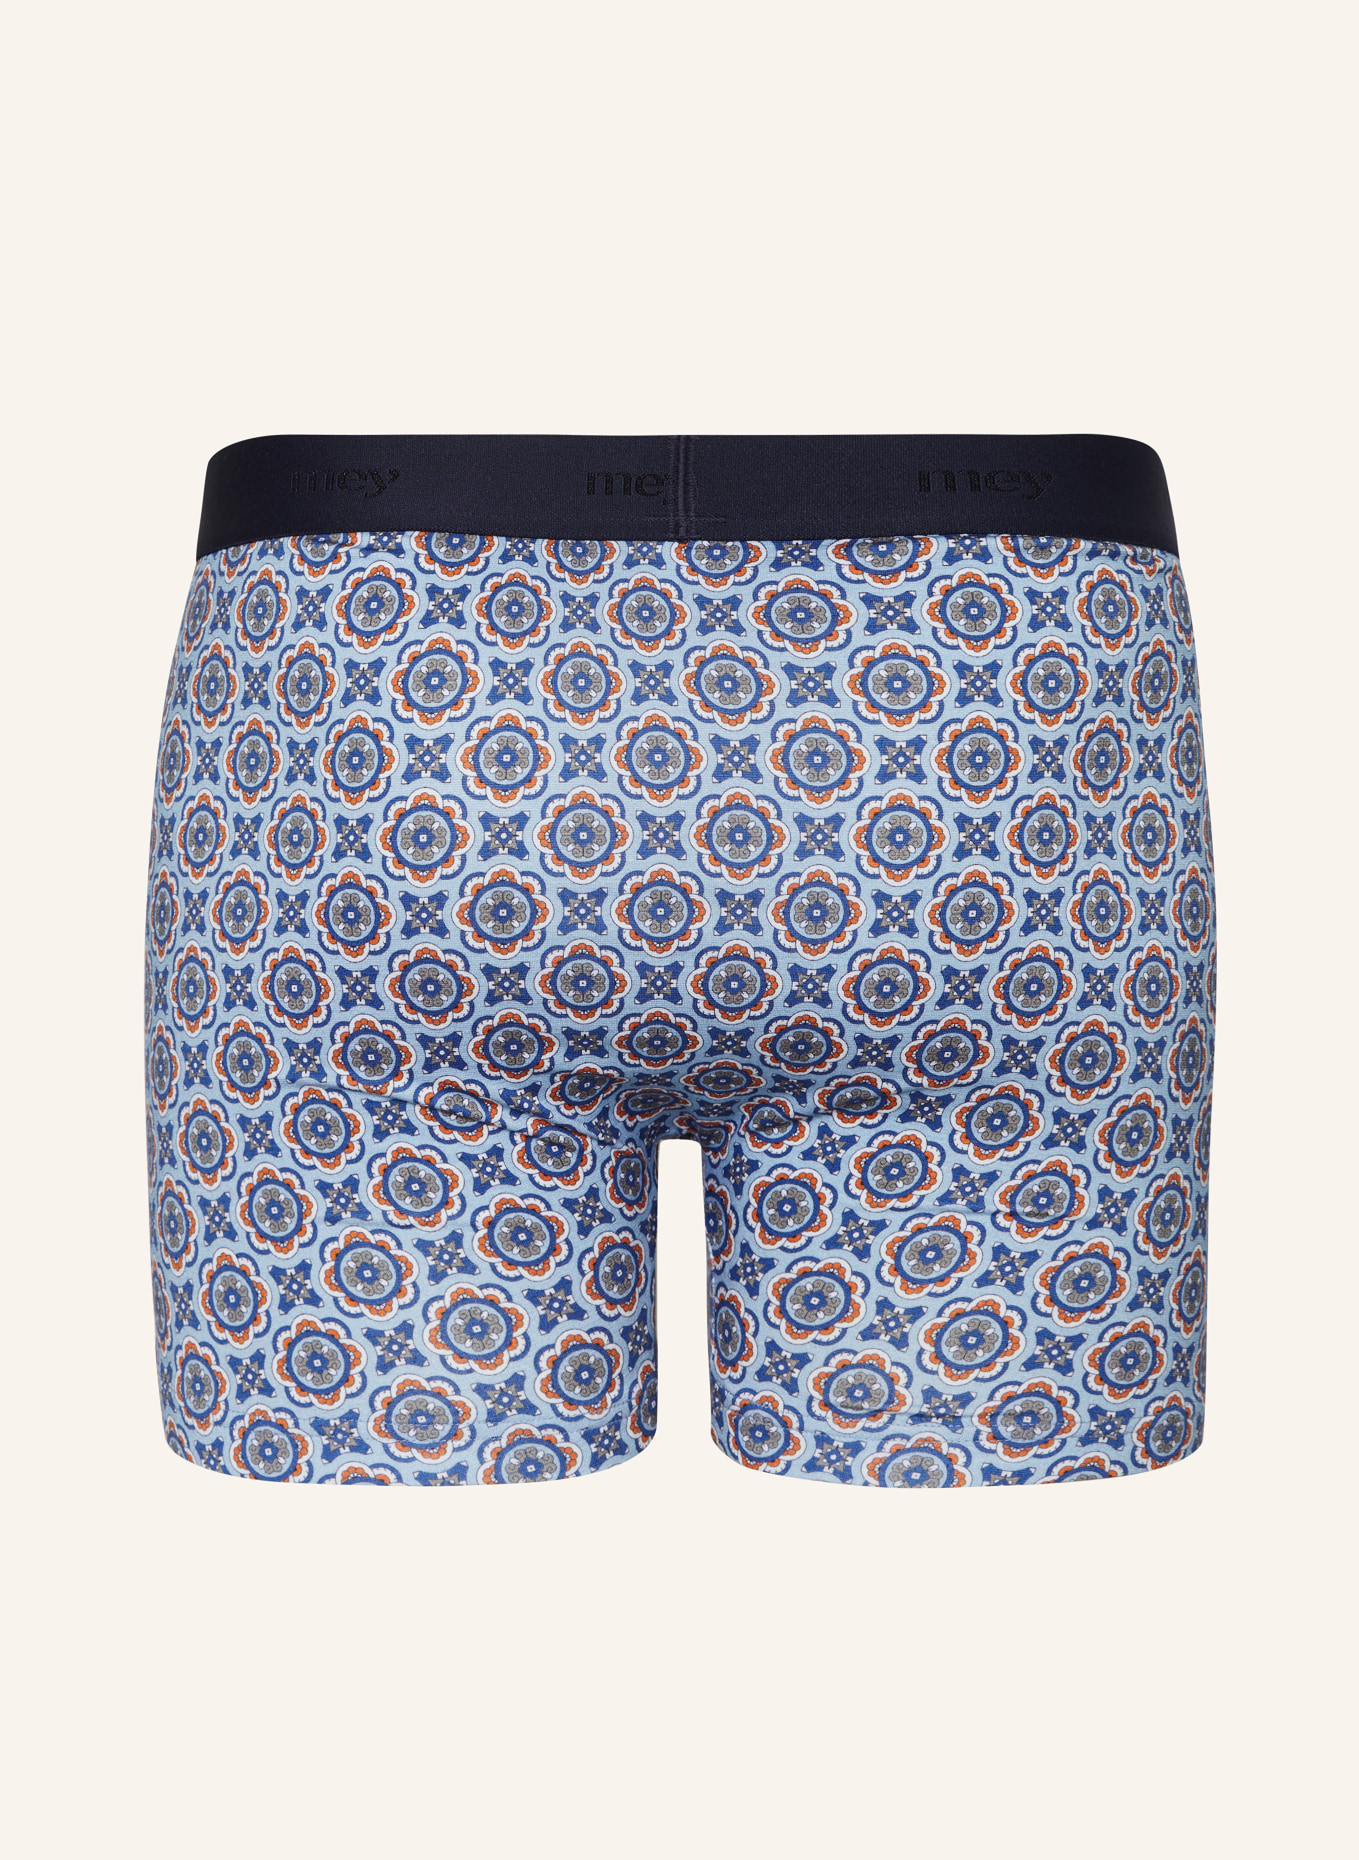 mey Boxer shorts series NOBLE ORNAMENTS, Color: BLUE GRAY/ BLUE/ ORANGE (Image 2)